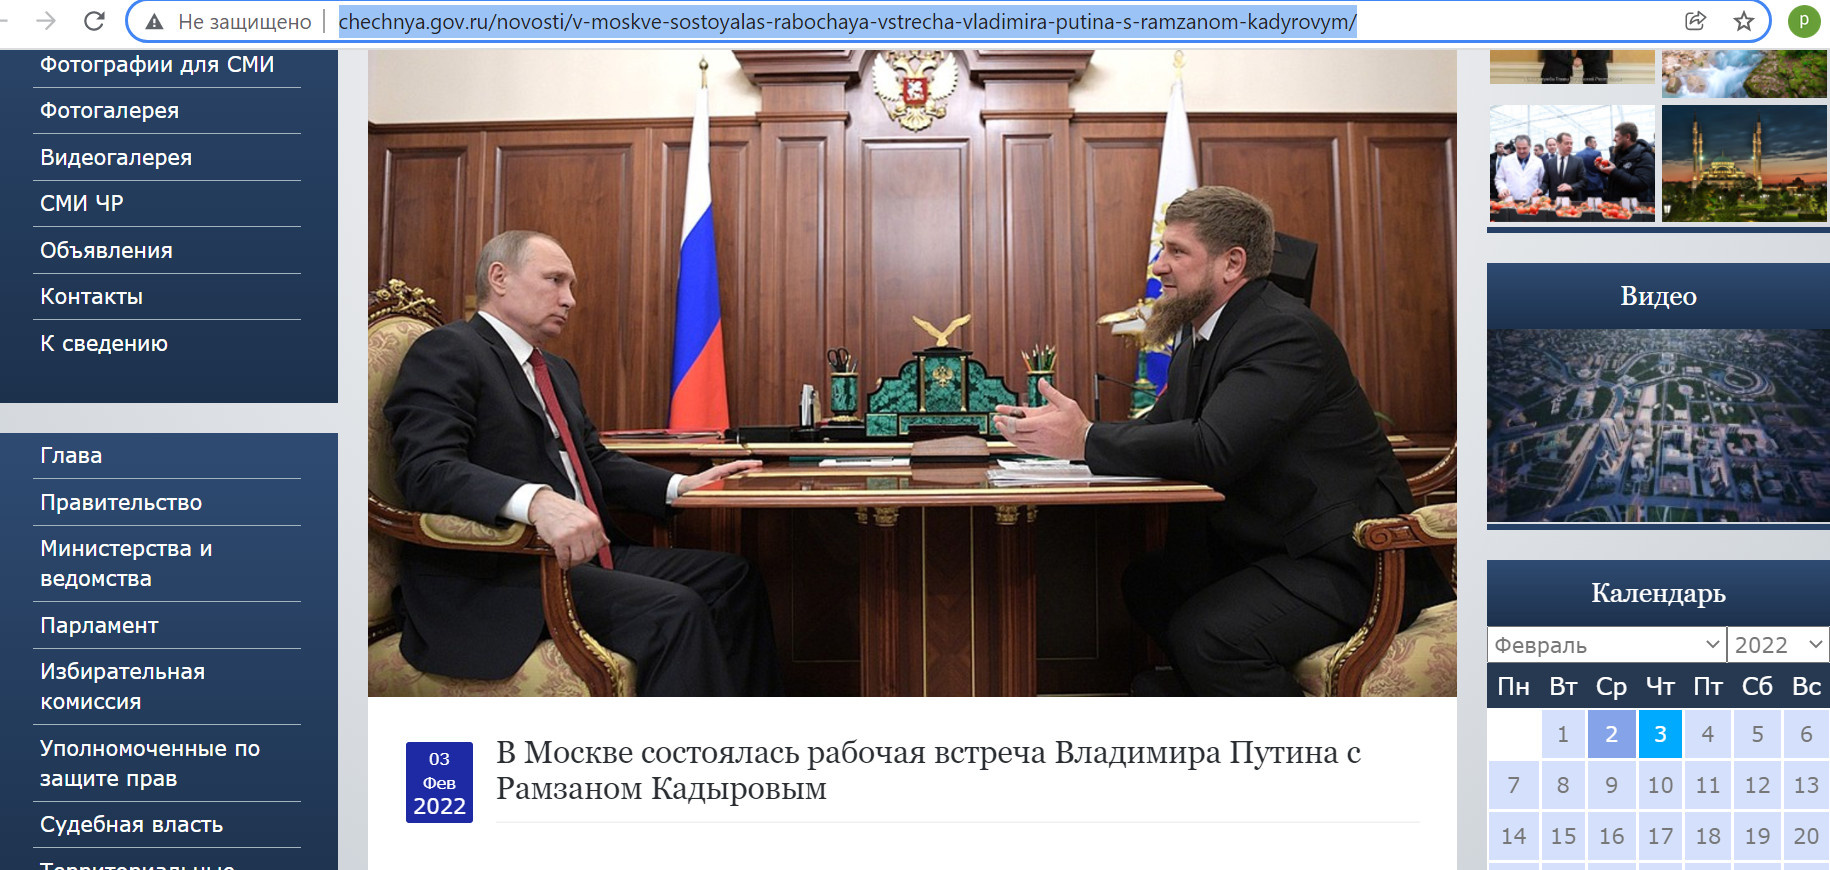 Скриншот с сайта chechnya.gov.ru